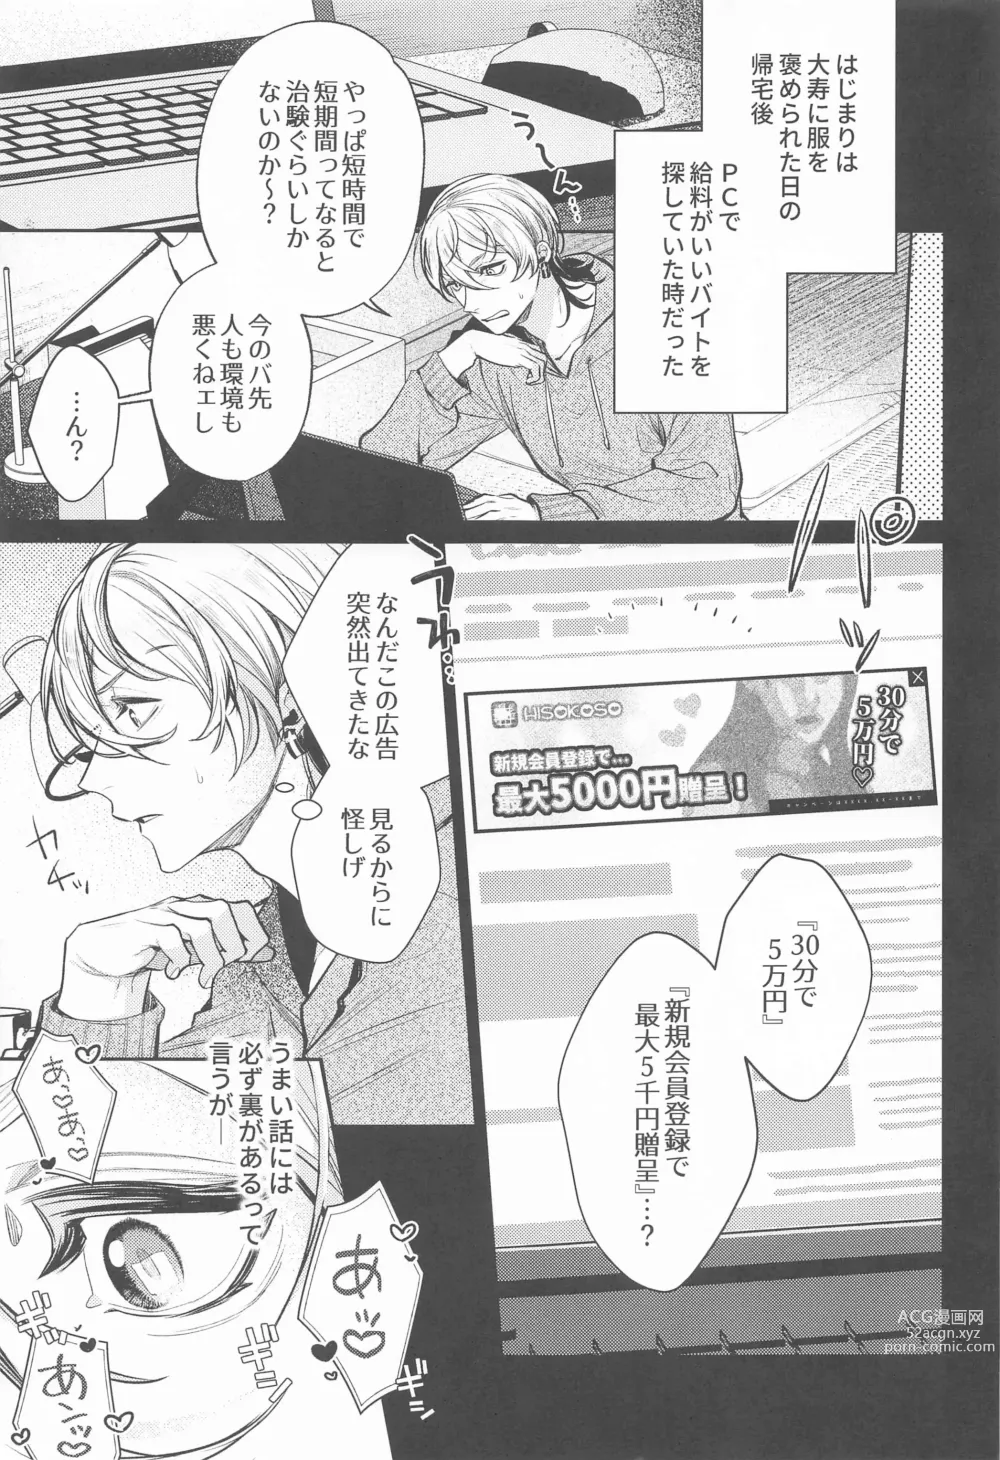 Page 4 of doujinshi Teikyou: Kataomoichuu no Otoko